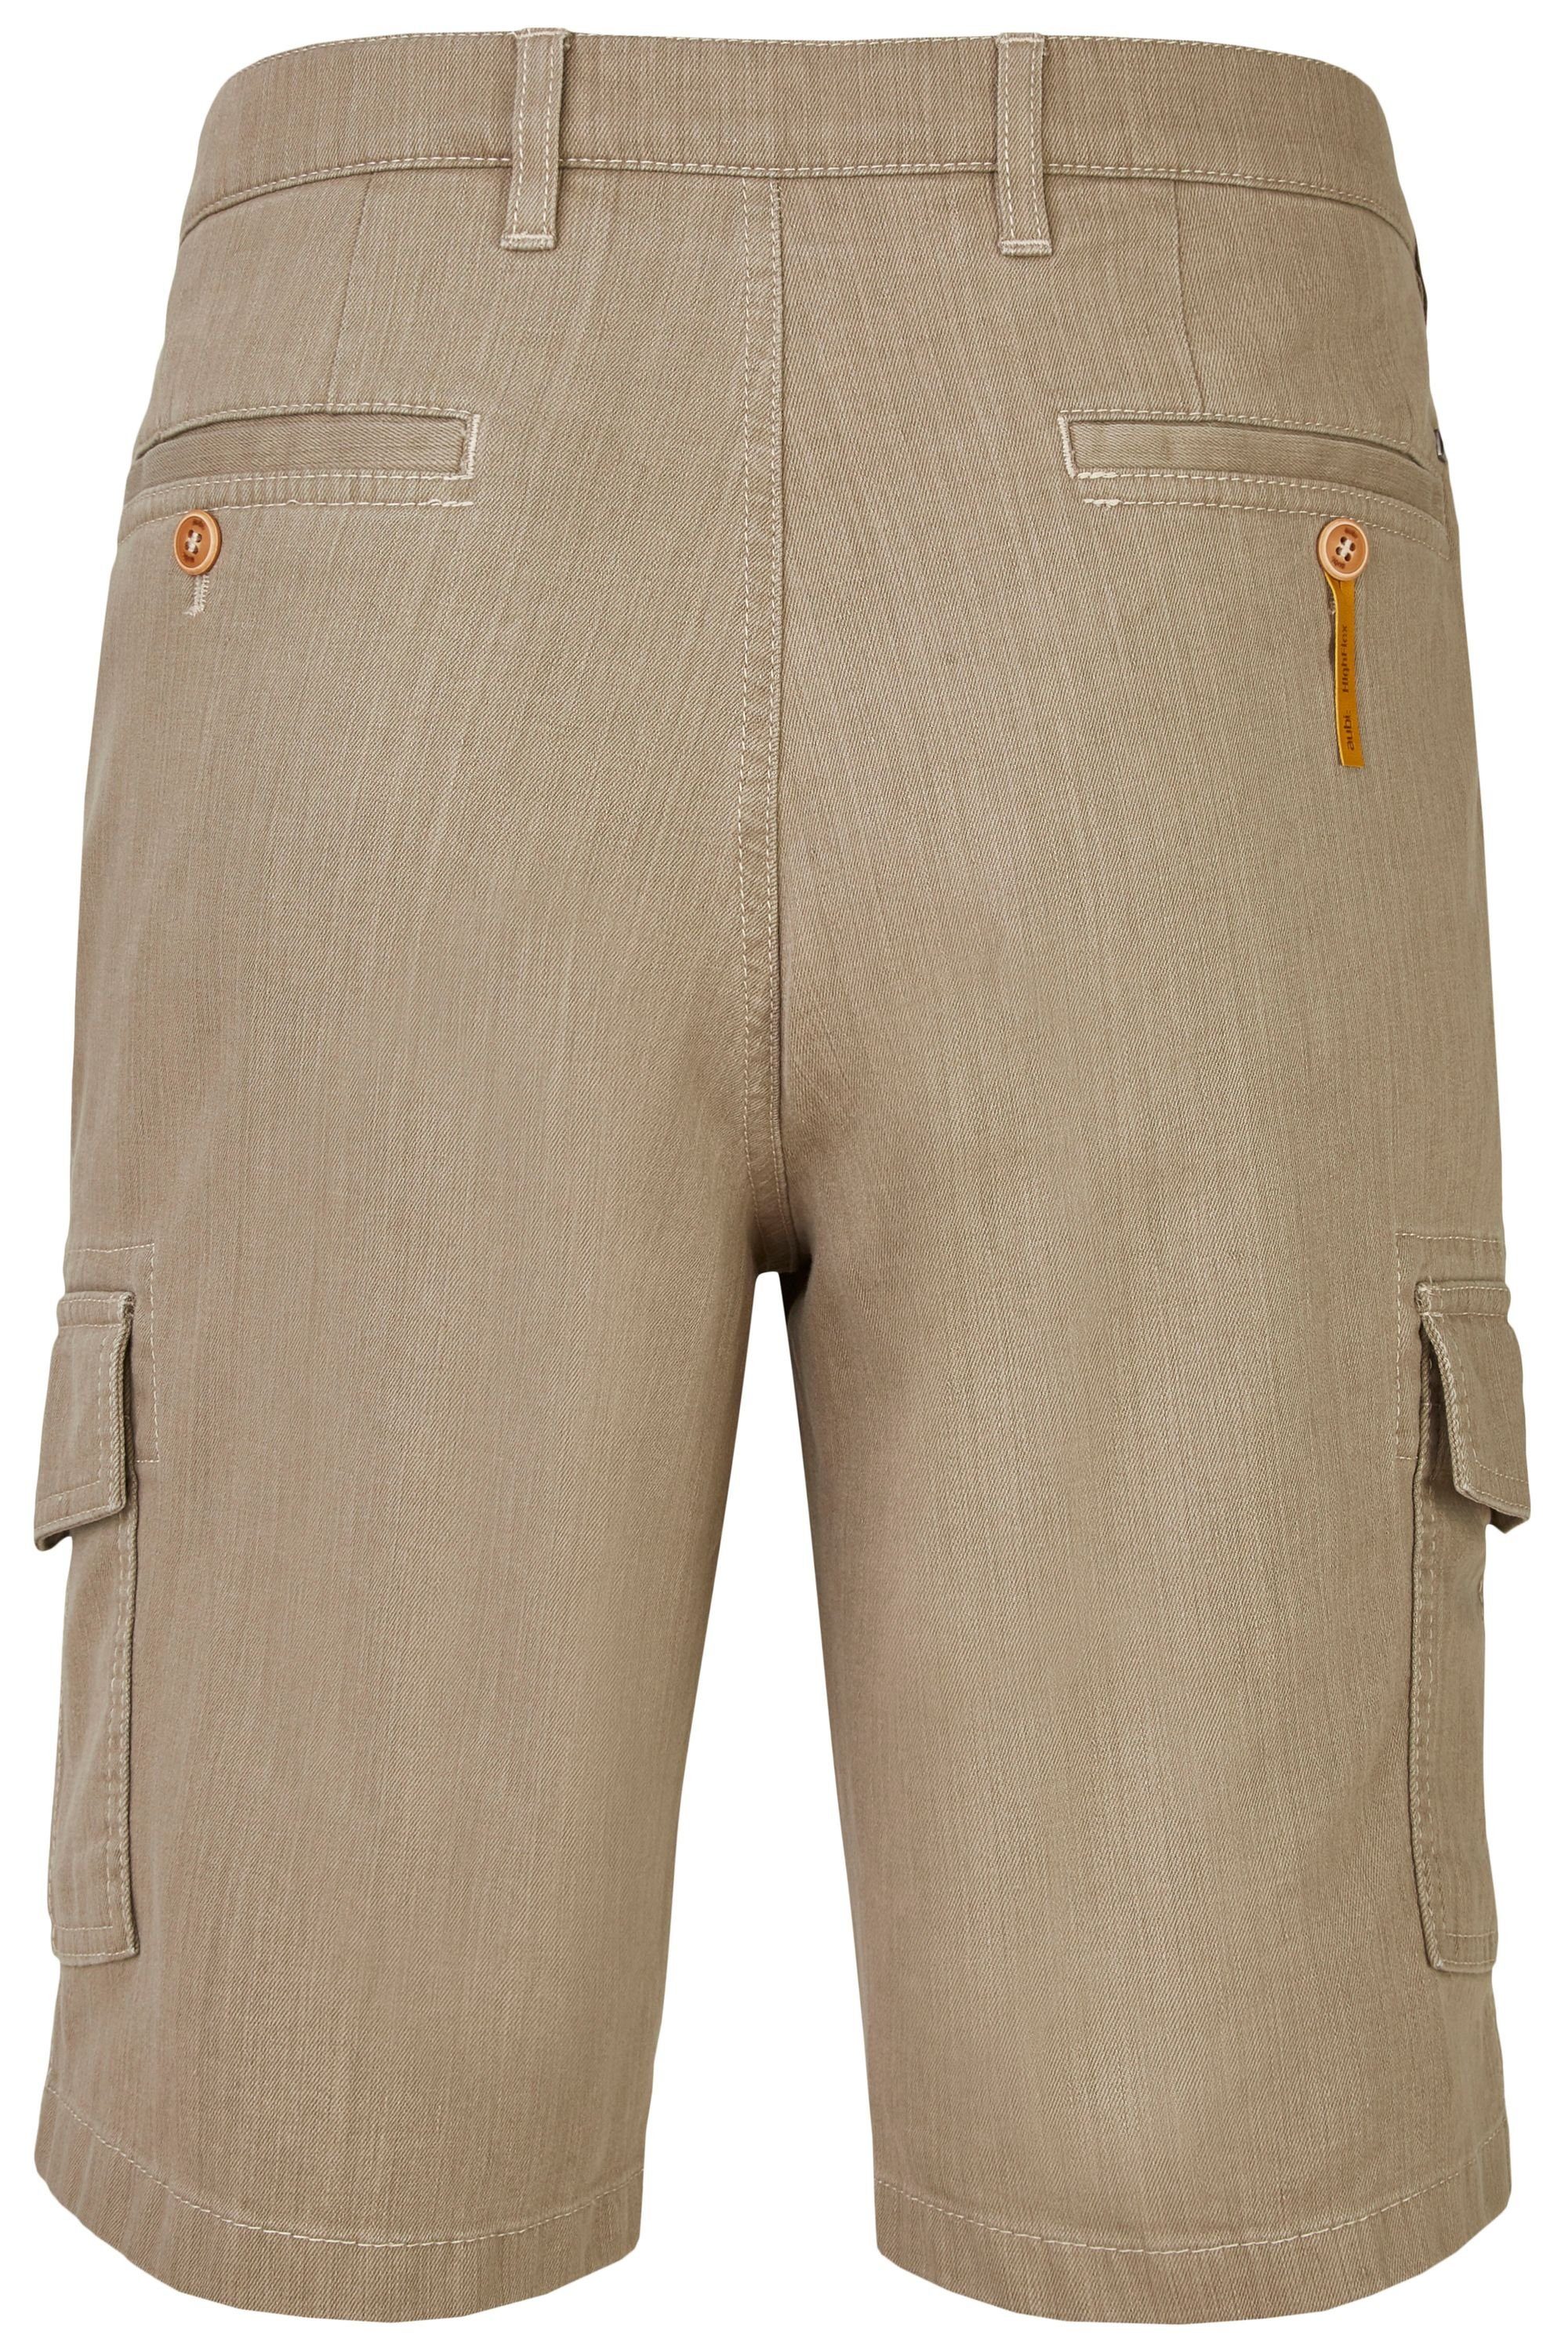 aubi: Bequeme Jeans beige Sommer Stretch aubi Herren (21) Shorts 616 Baumwolle Perfect Jeans Cargo High Flex Modell Fit aus